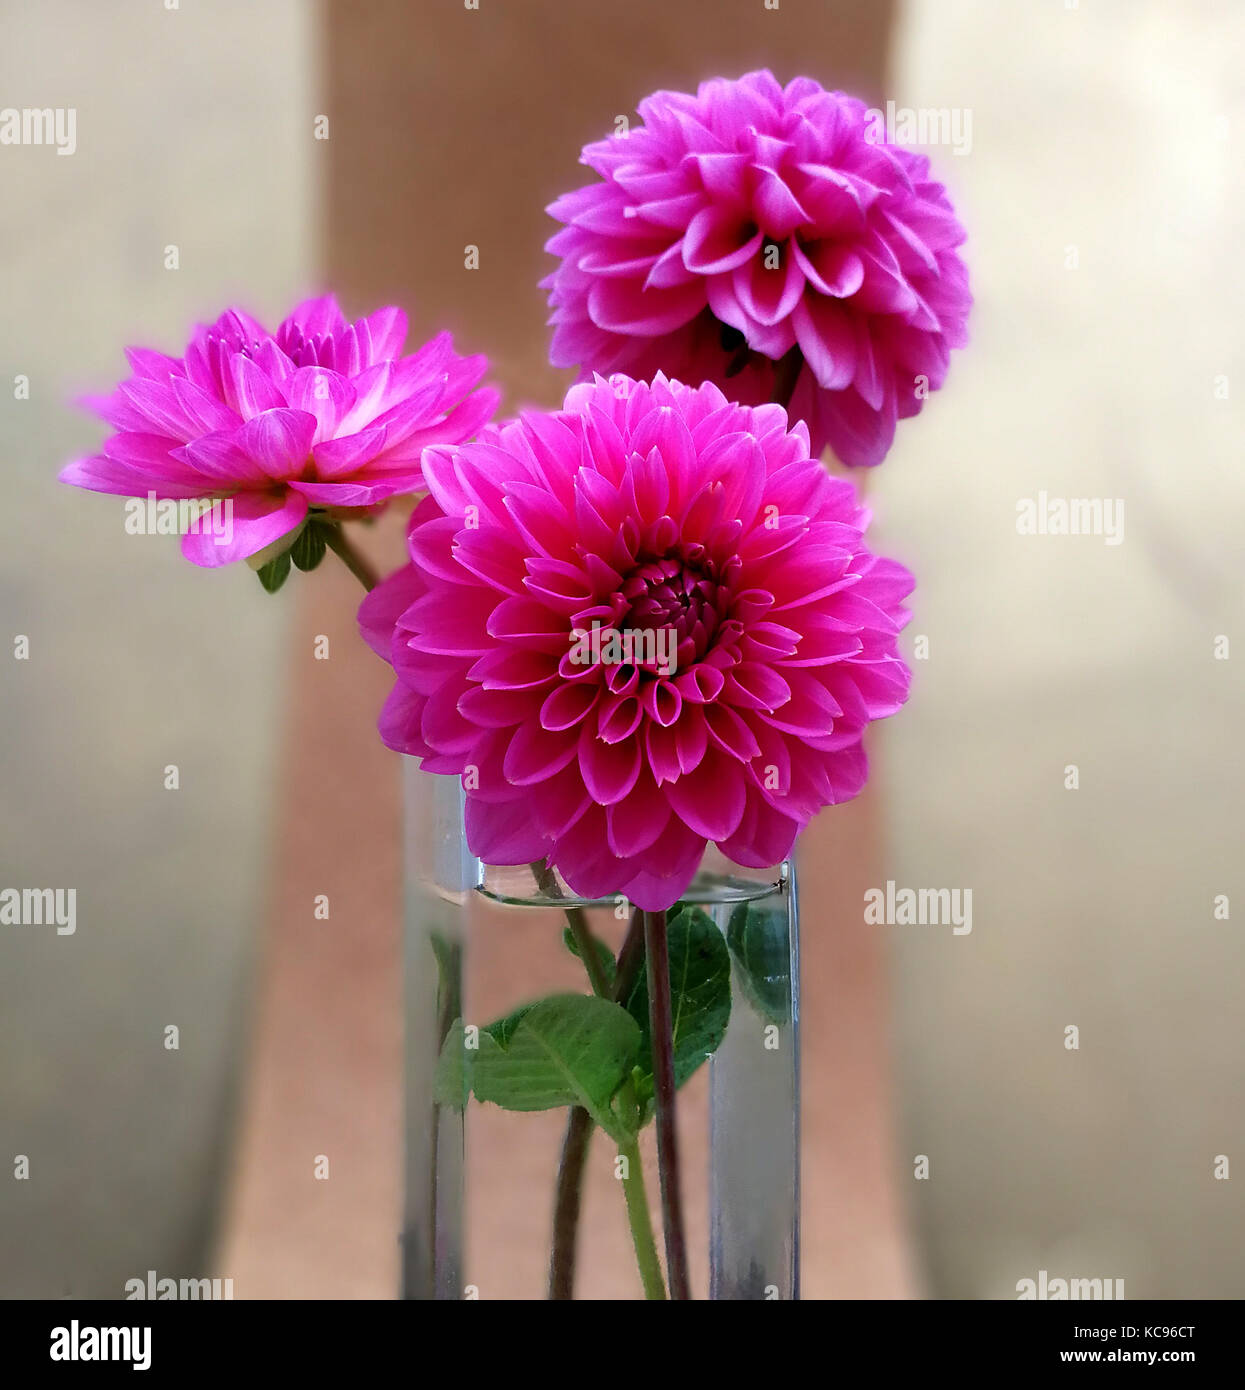 trhee pink dahlias stylized bouquet Stock Photo